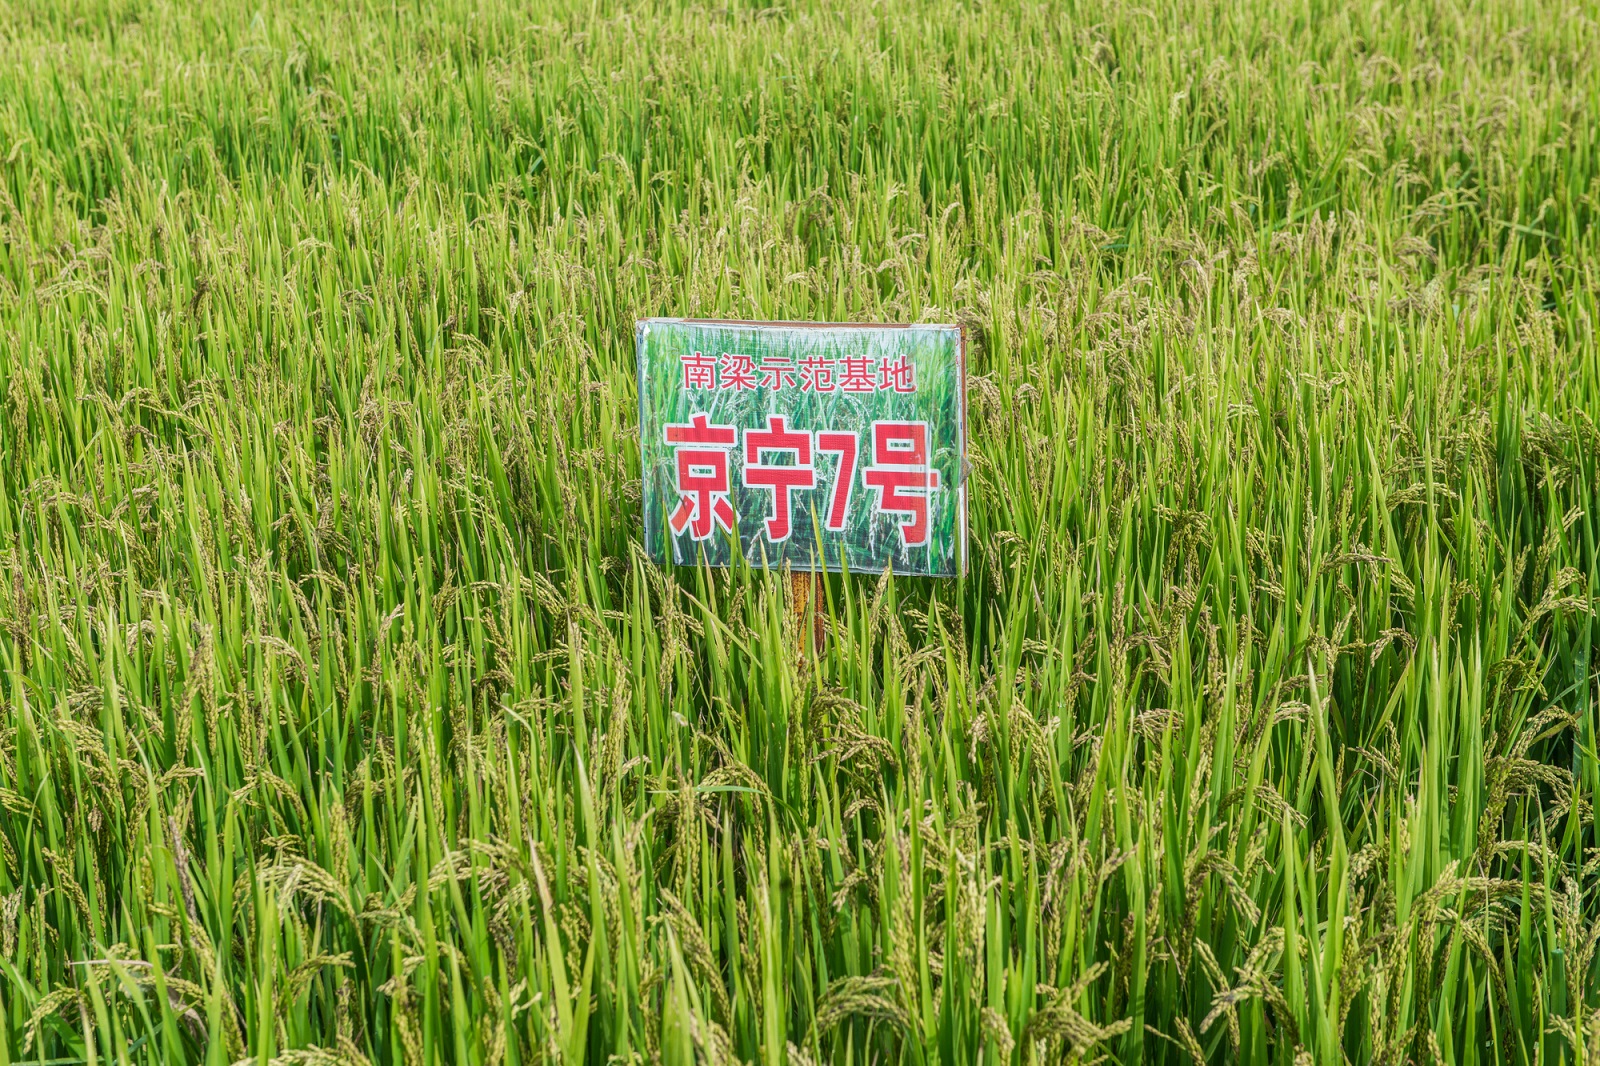 图片说明：能够实现稳定高产、具备抗旱抗涝等特性的 “绿色超级稻” 在宁夏的试验田。